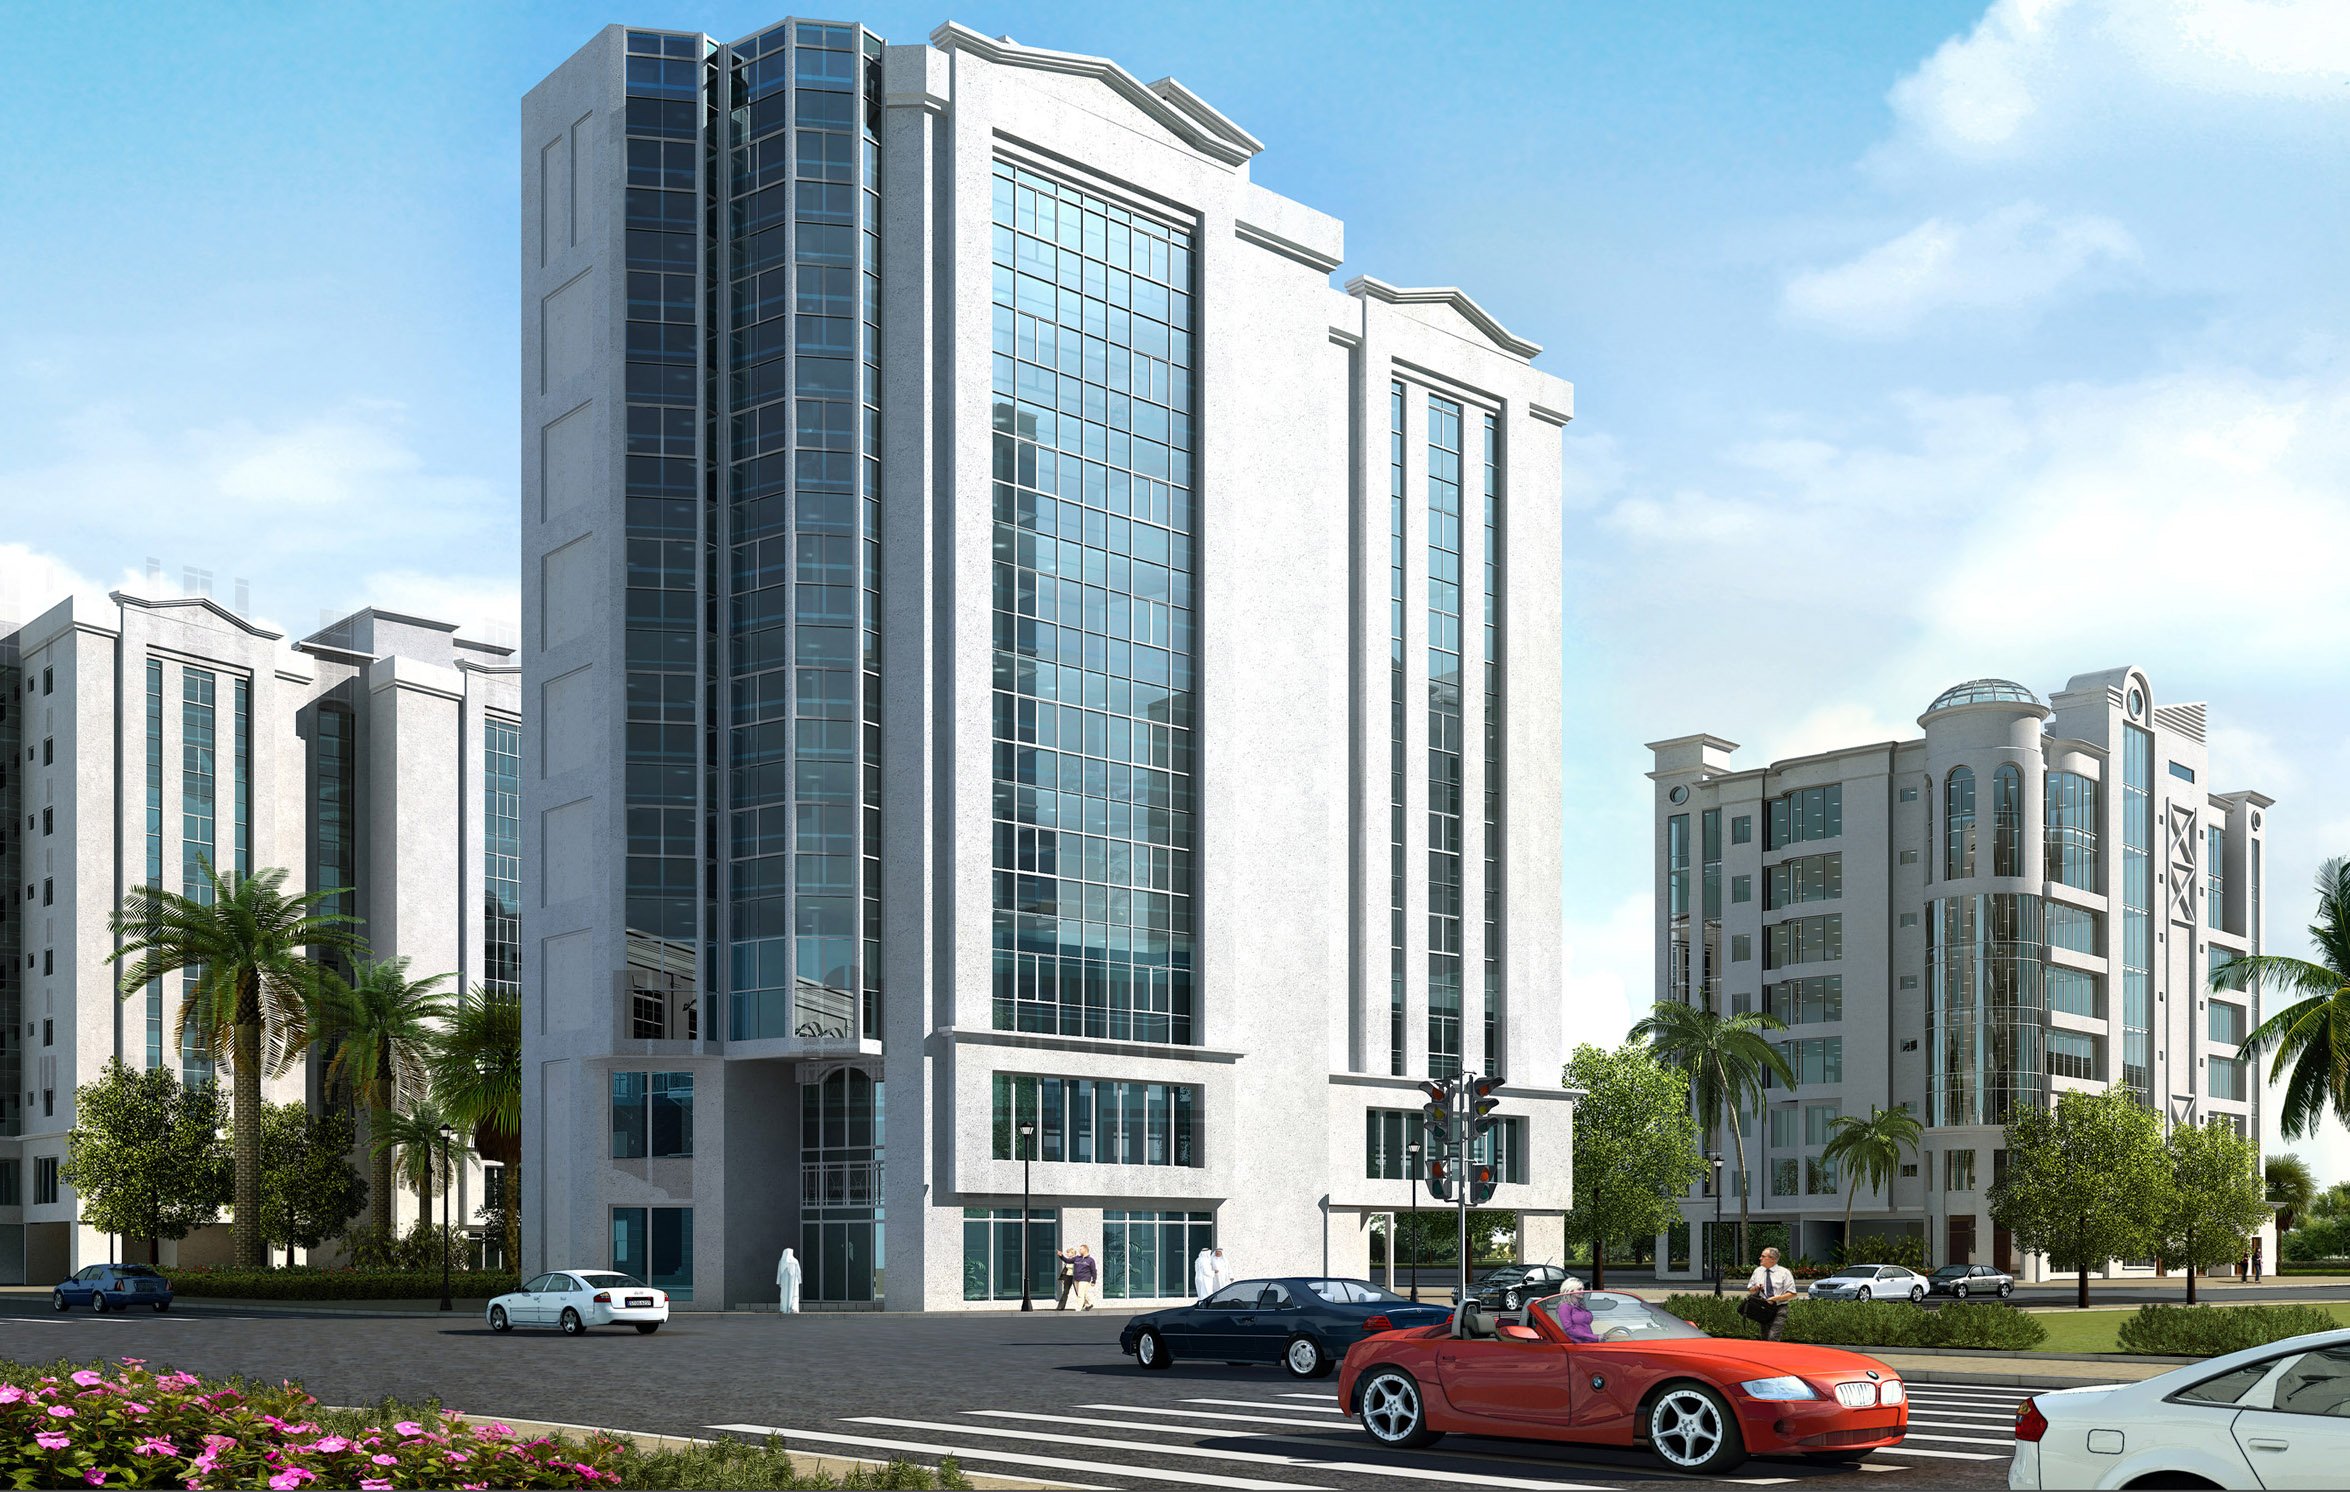 NOOR AL-HIDAYA - HOTEL BUILDING